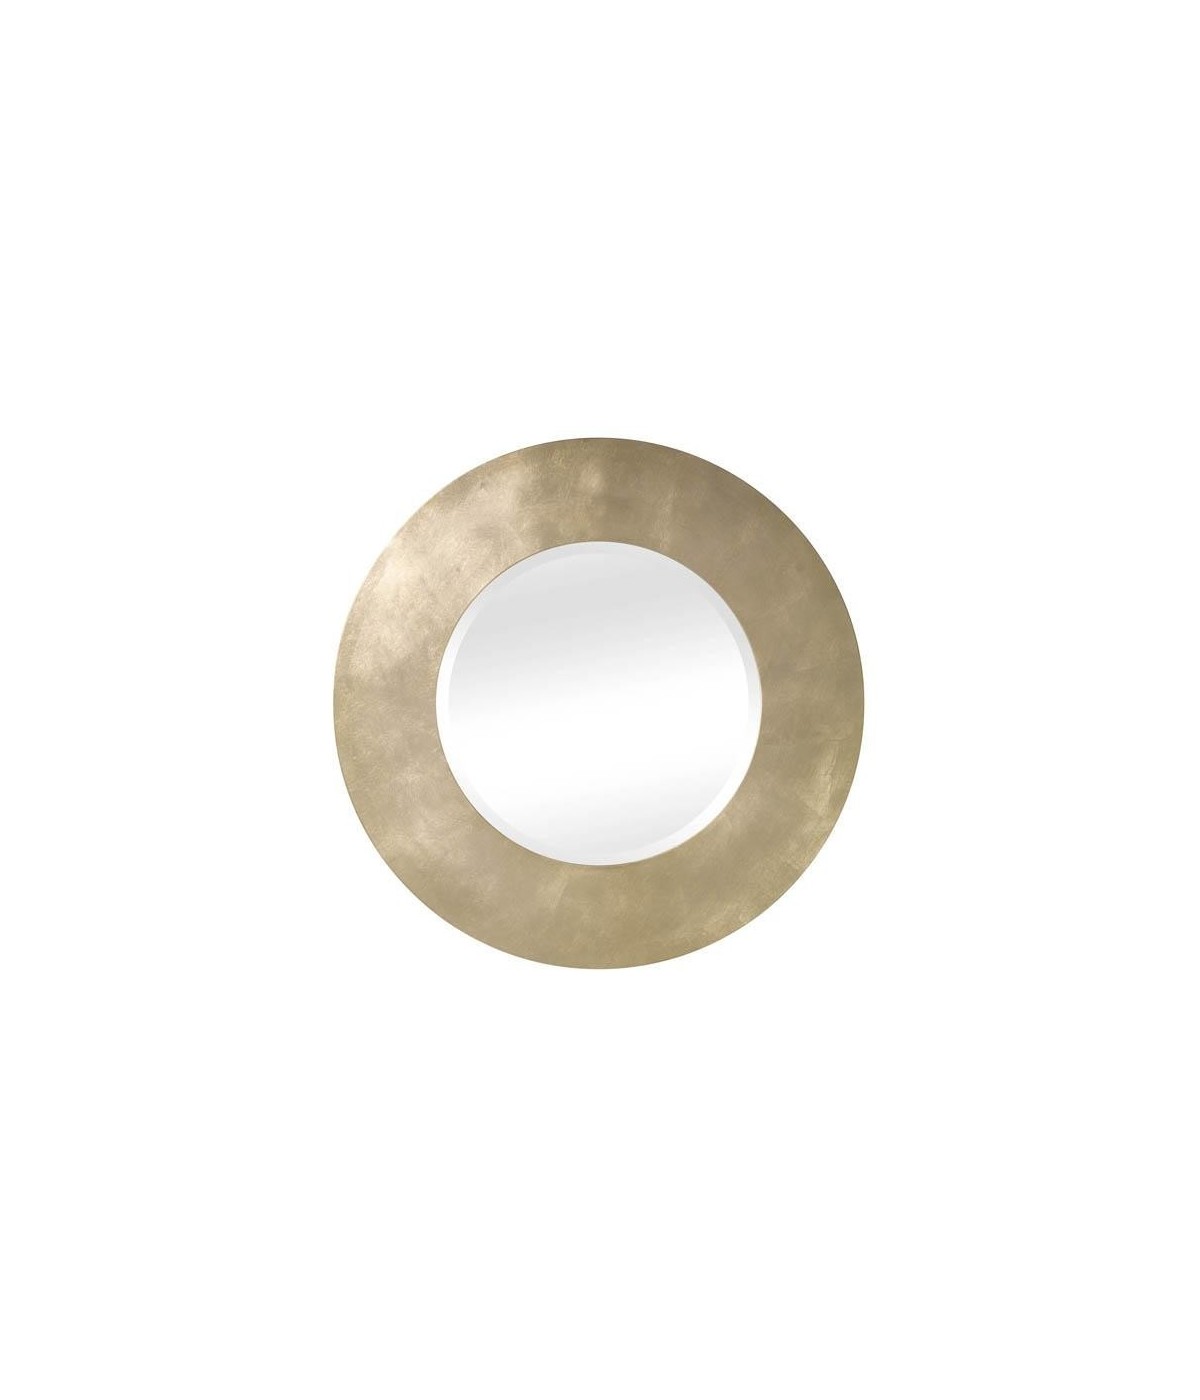 MOBILI2G - Specchiera in foglia oro rotonda misura : L.82 x H. 82 x P. 2